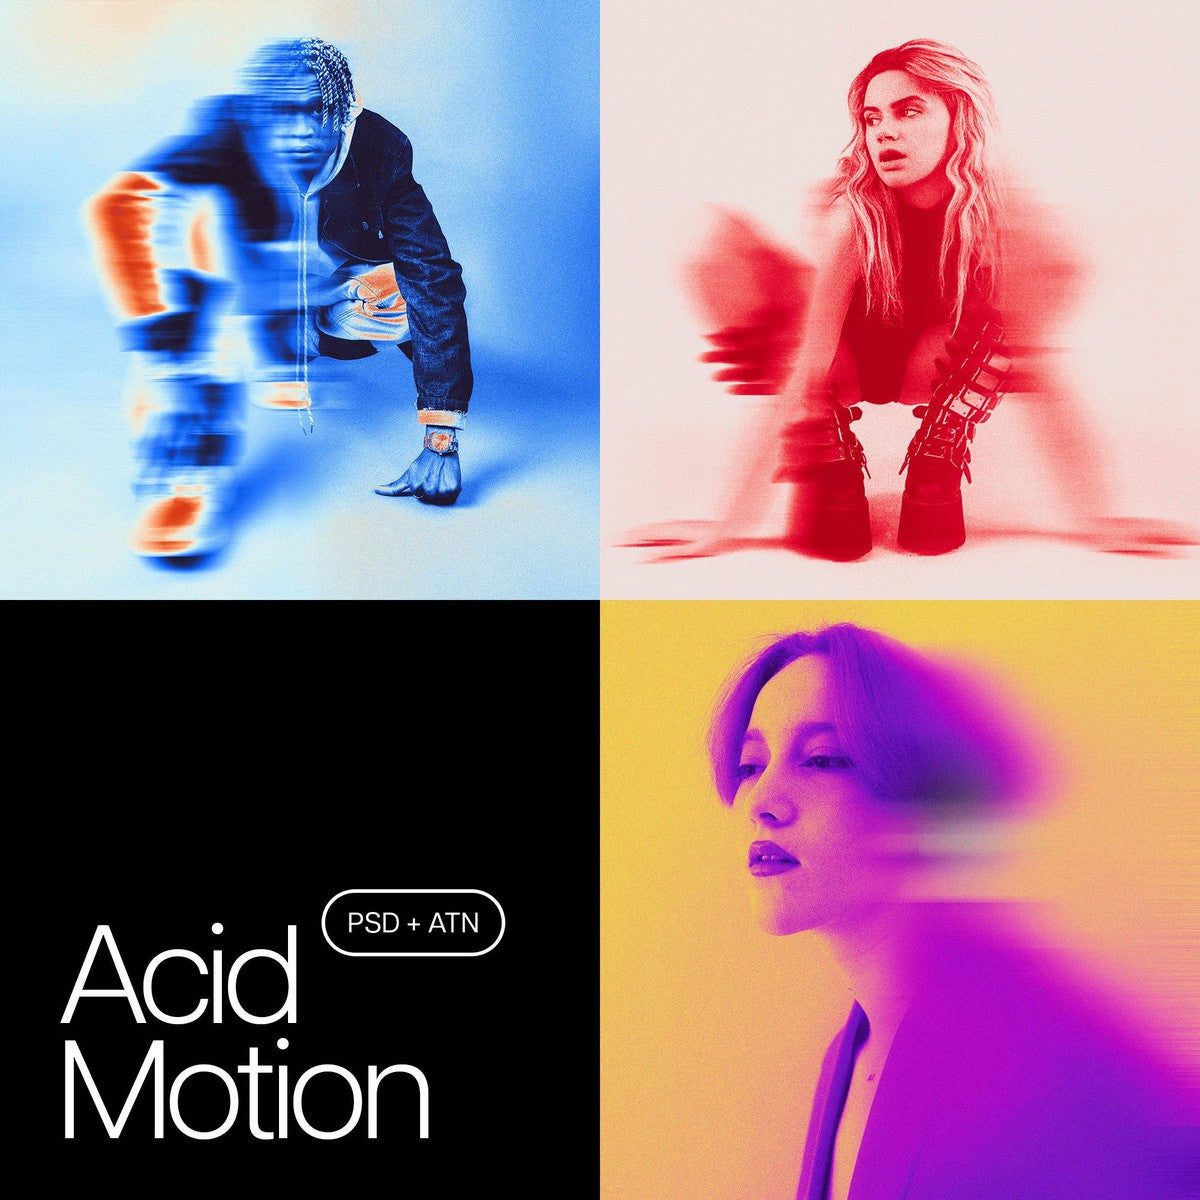 Acid Motion Photoshop Kit